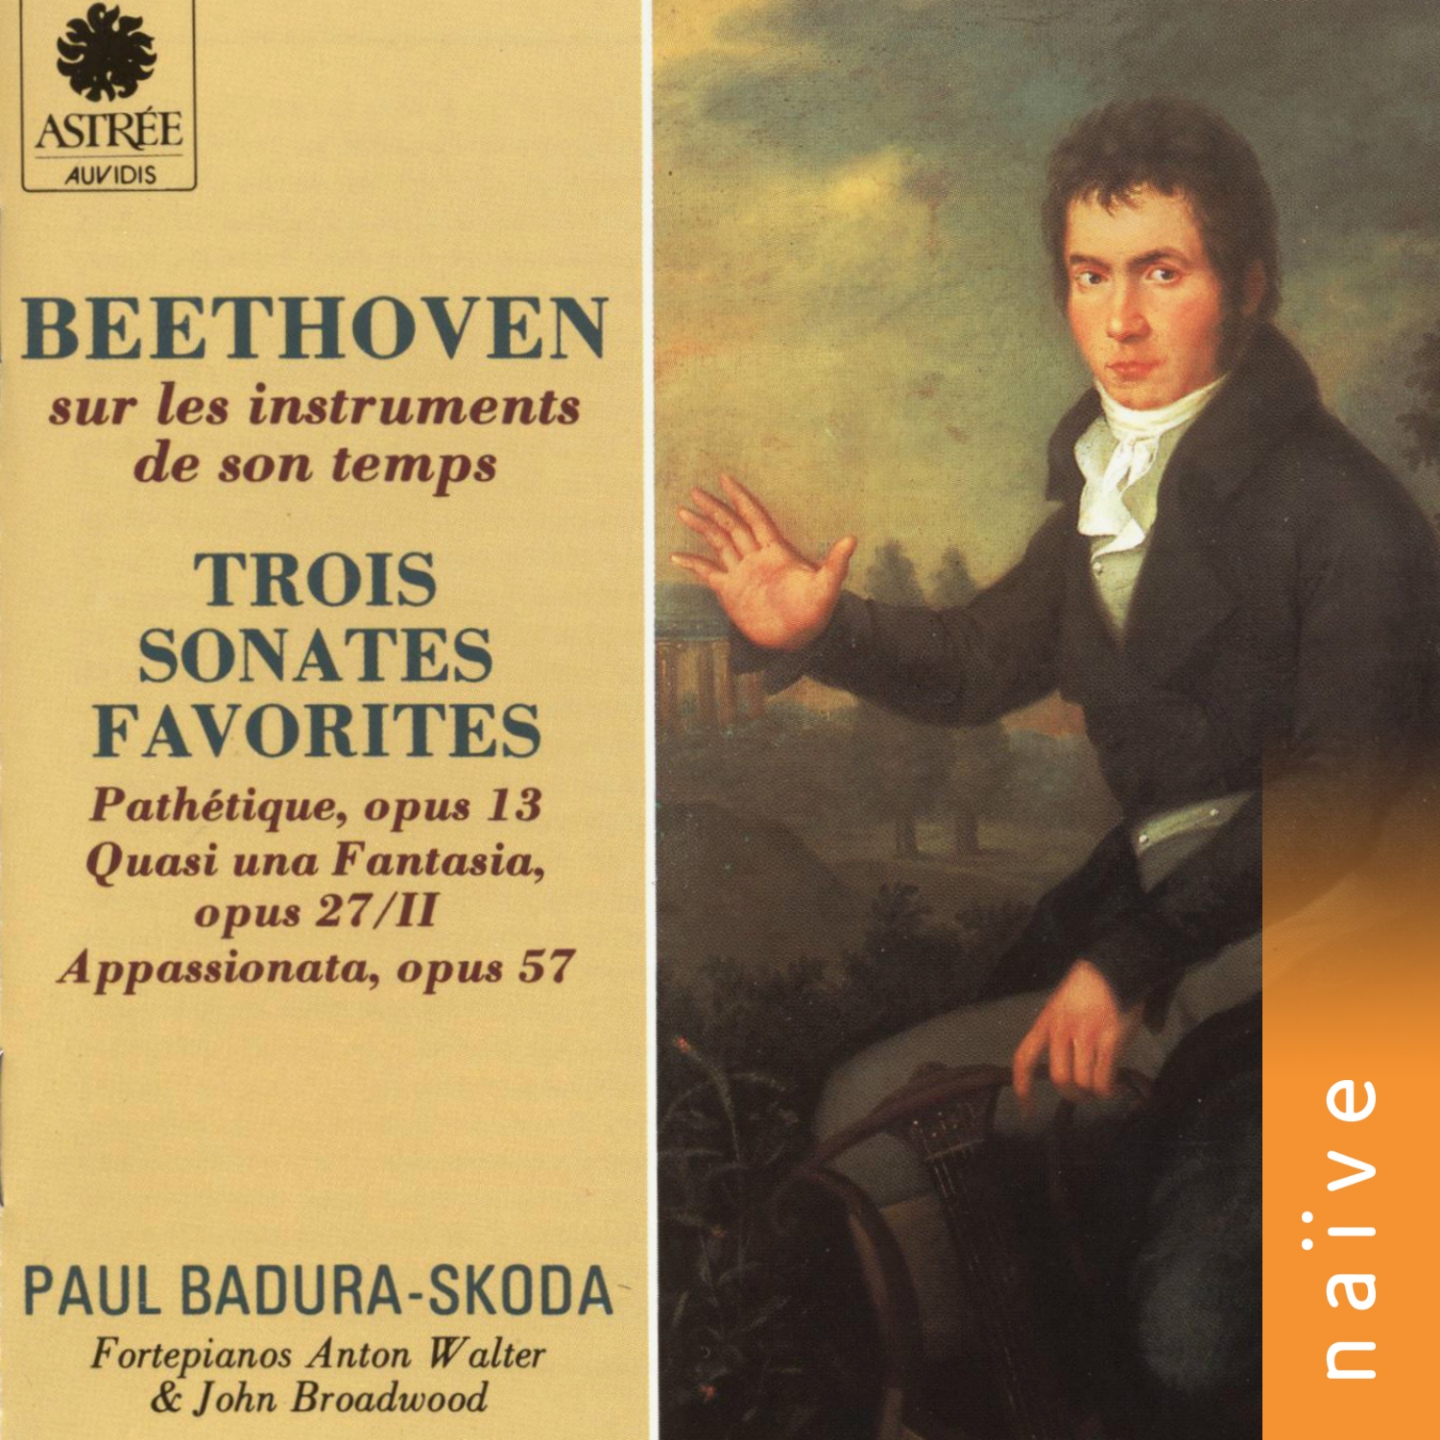 Beethoven sur les instruments de son temps: Trois sonates favorites